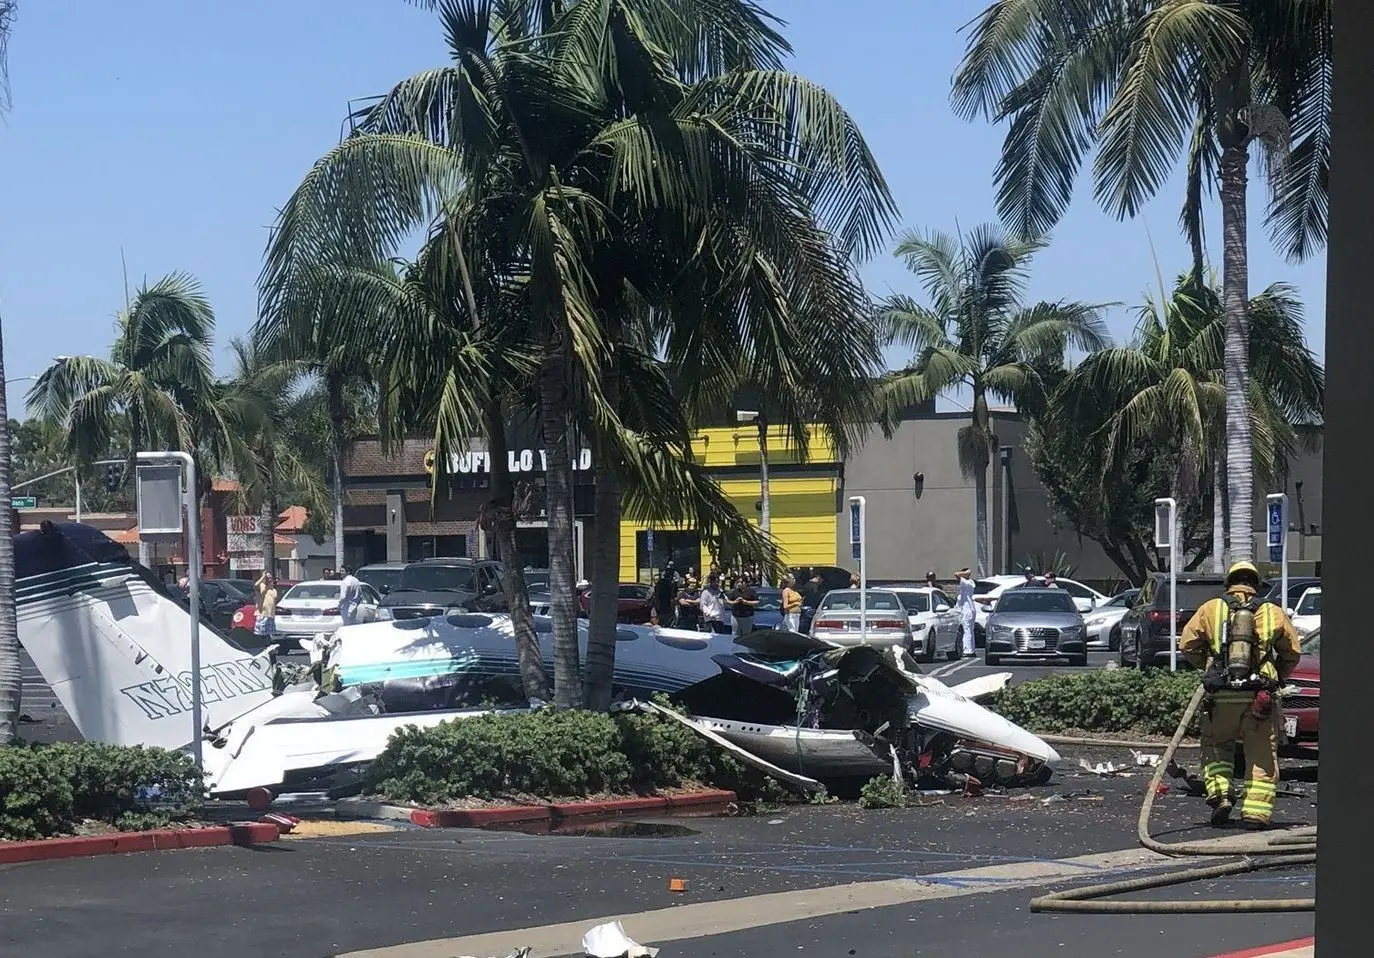 
سقوط یک هواپیمای کوچک در کالیفرنیا